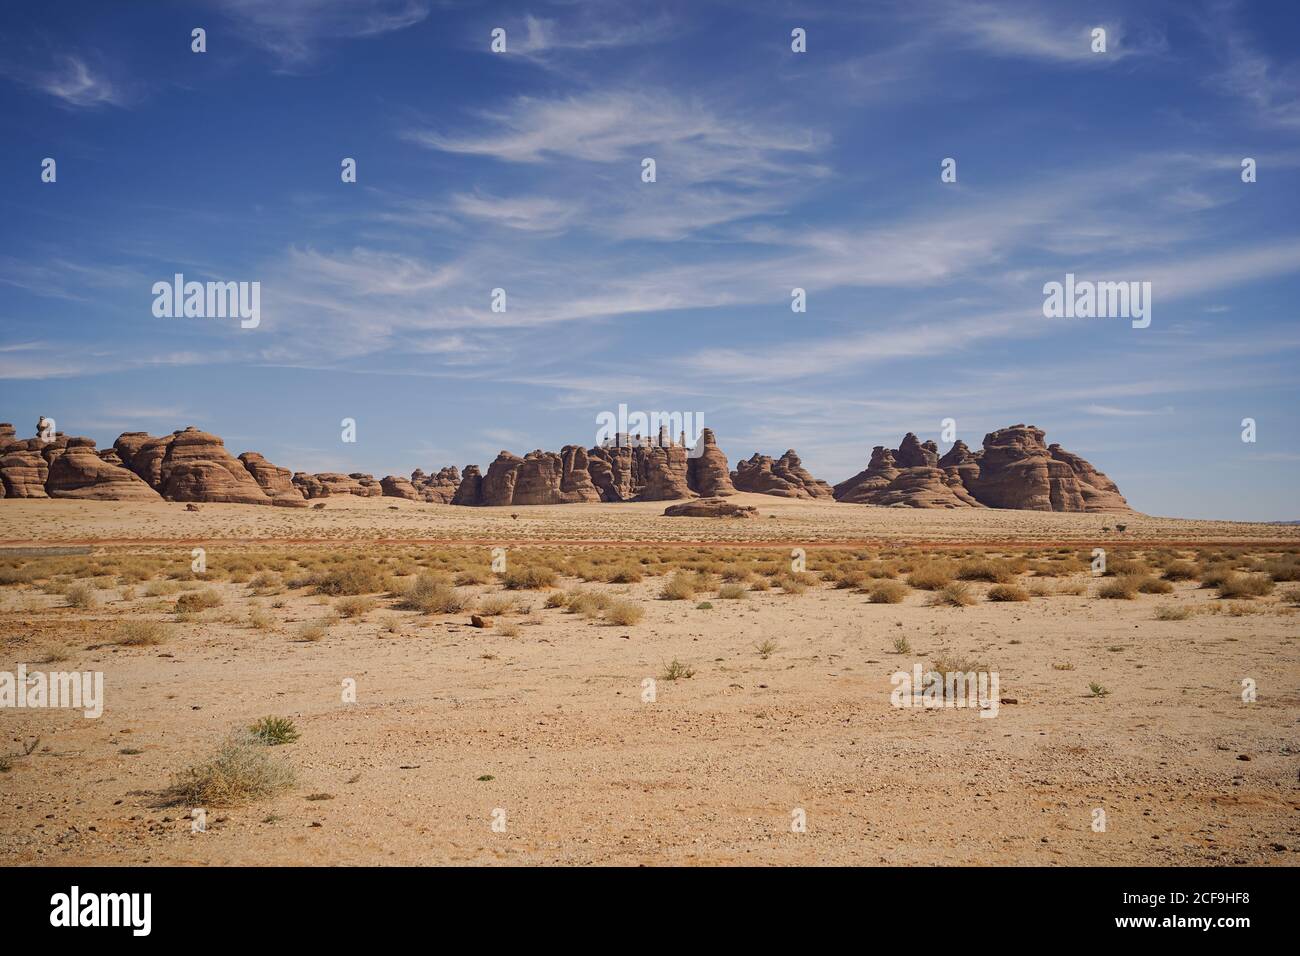 Picturesque scenery of sandstone rocks and peaks in desert in Saudi Arabia Stock Photo